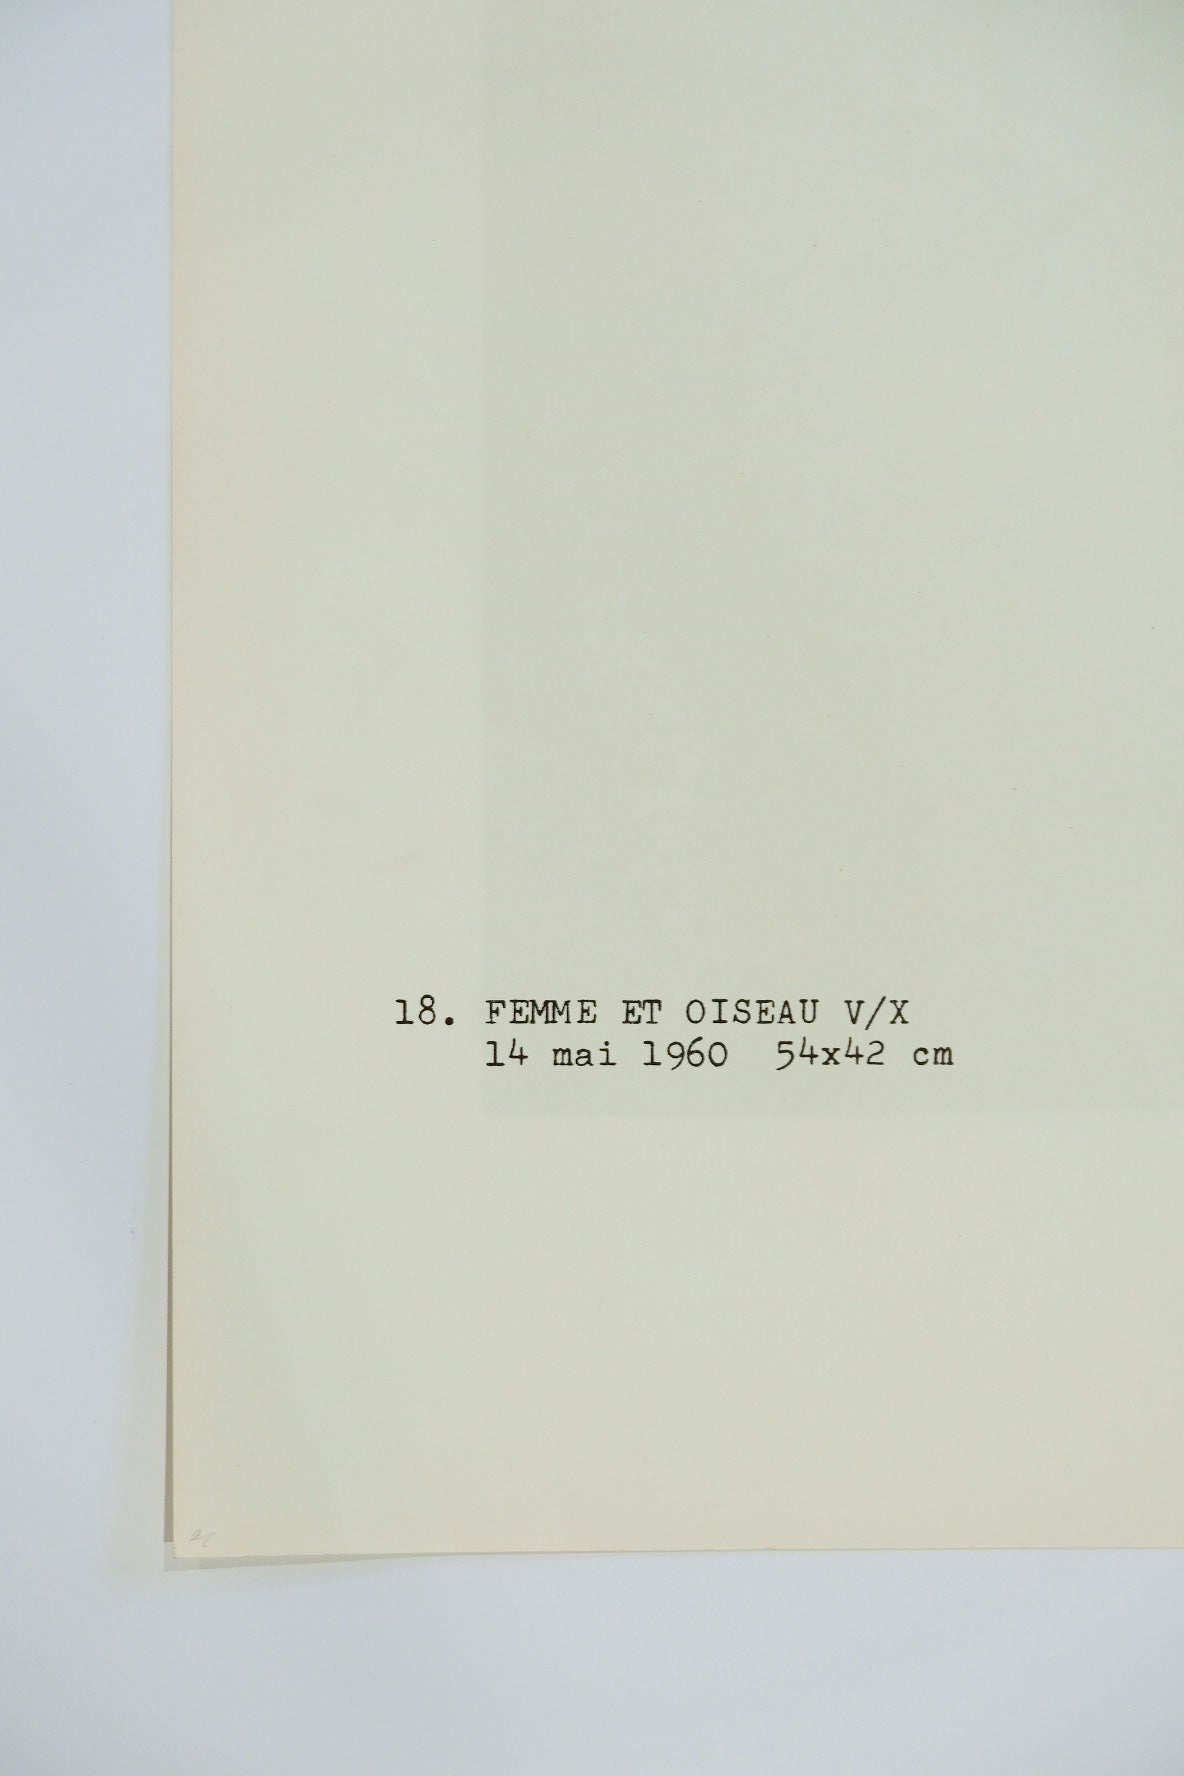 Joan Miro "FEMME ET OISEAU" V/X plate #18